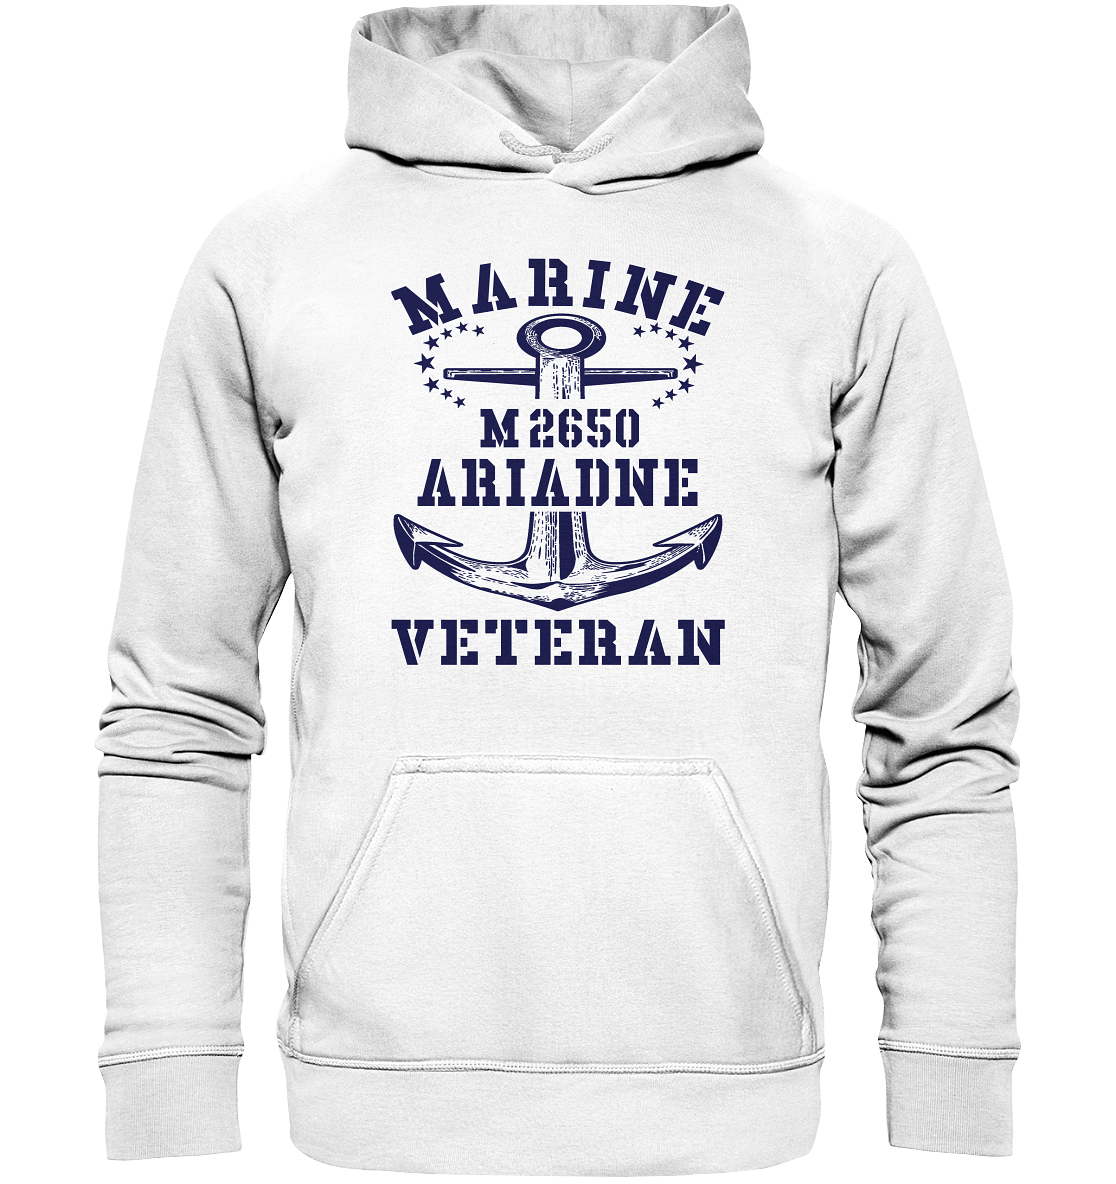 BiMi M2650 ARIADNE Marine Veteran - Basic Unisex Hoodie